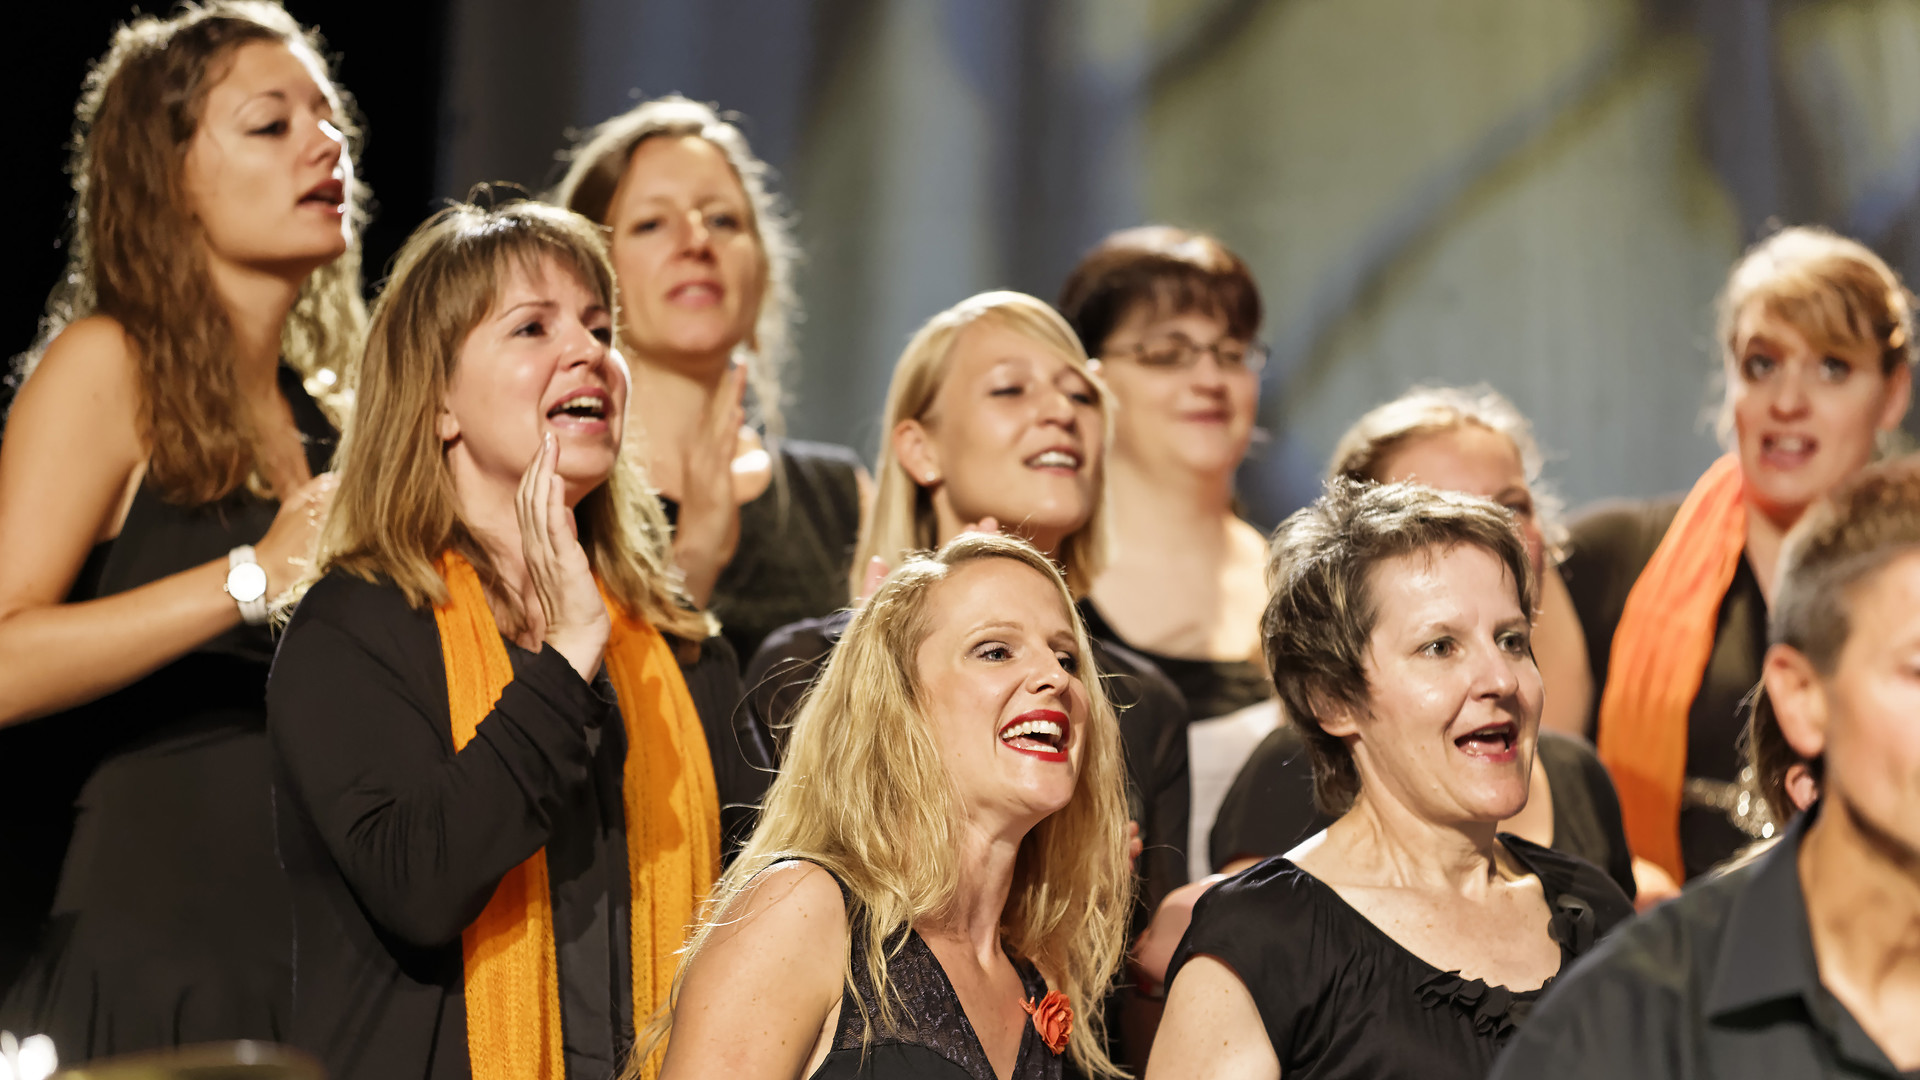 "Musik sollte für die Kirche ebenso eine wichtige Rolle spielen wie Katechese"